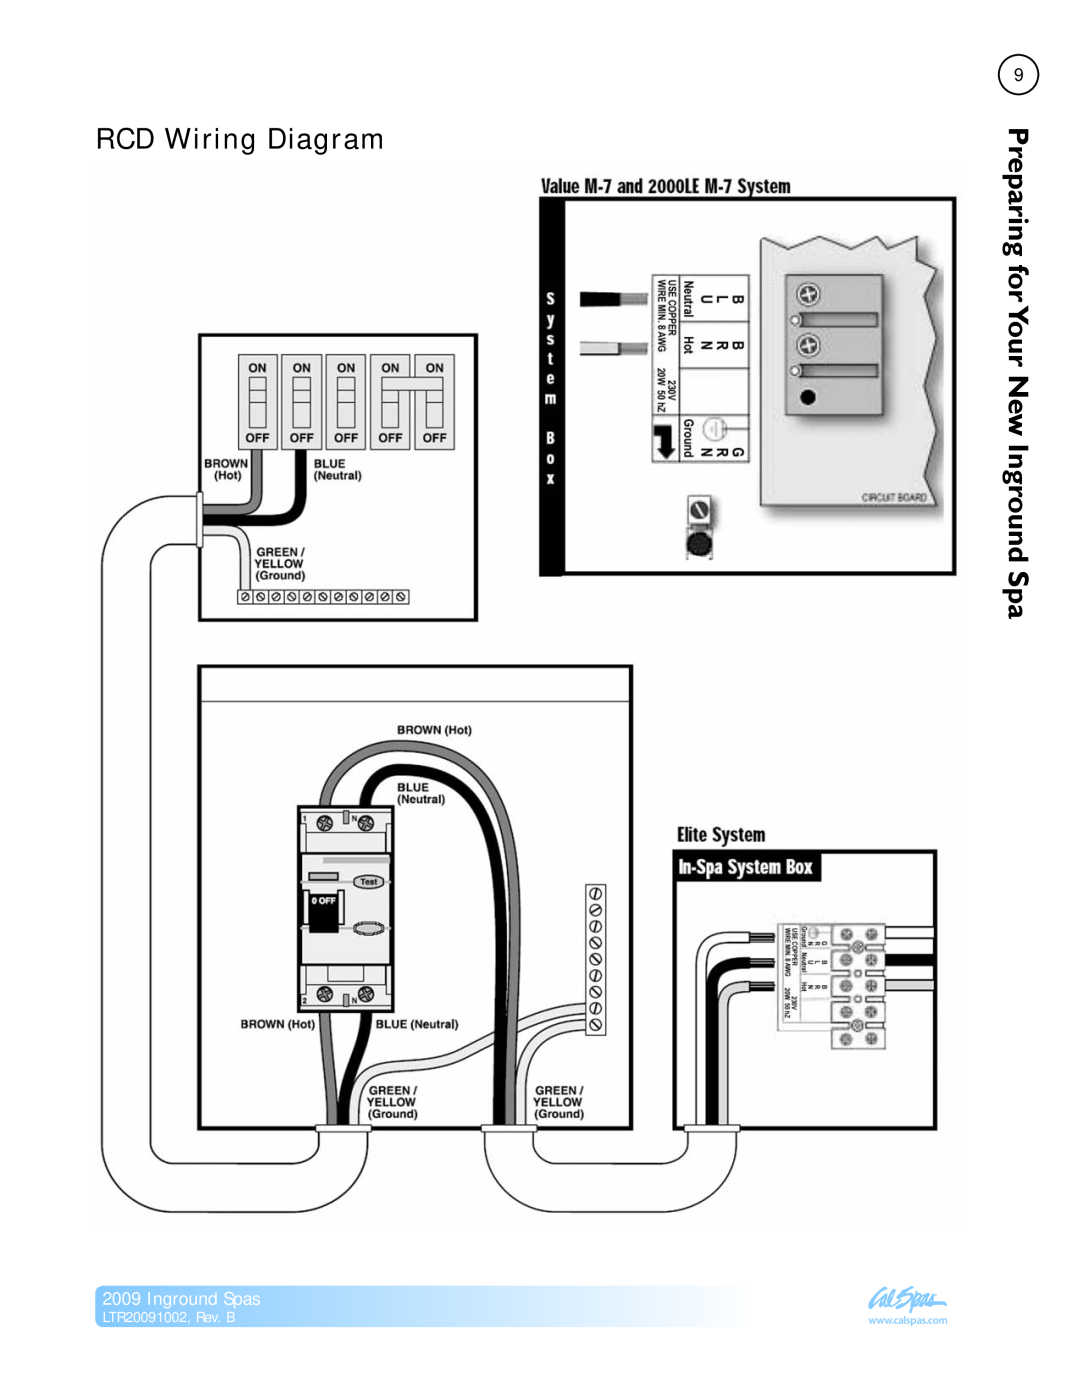 Cal Spas manual RCD Wiring Diagram, Your New Inground Spa, Inground Spas, LTR20091002, Rev. B, Preparingfor 